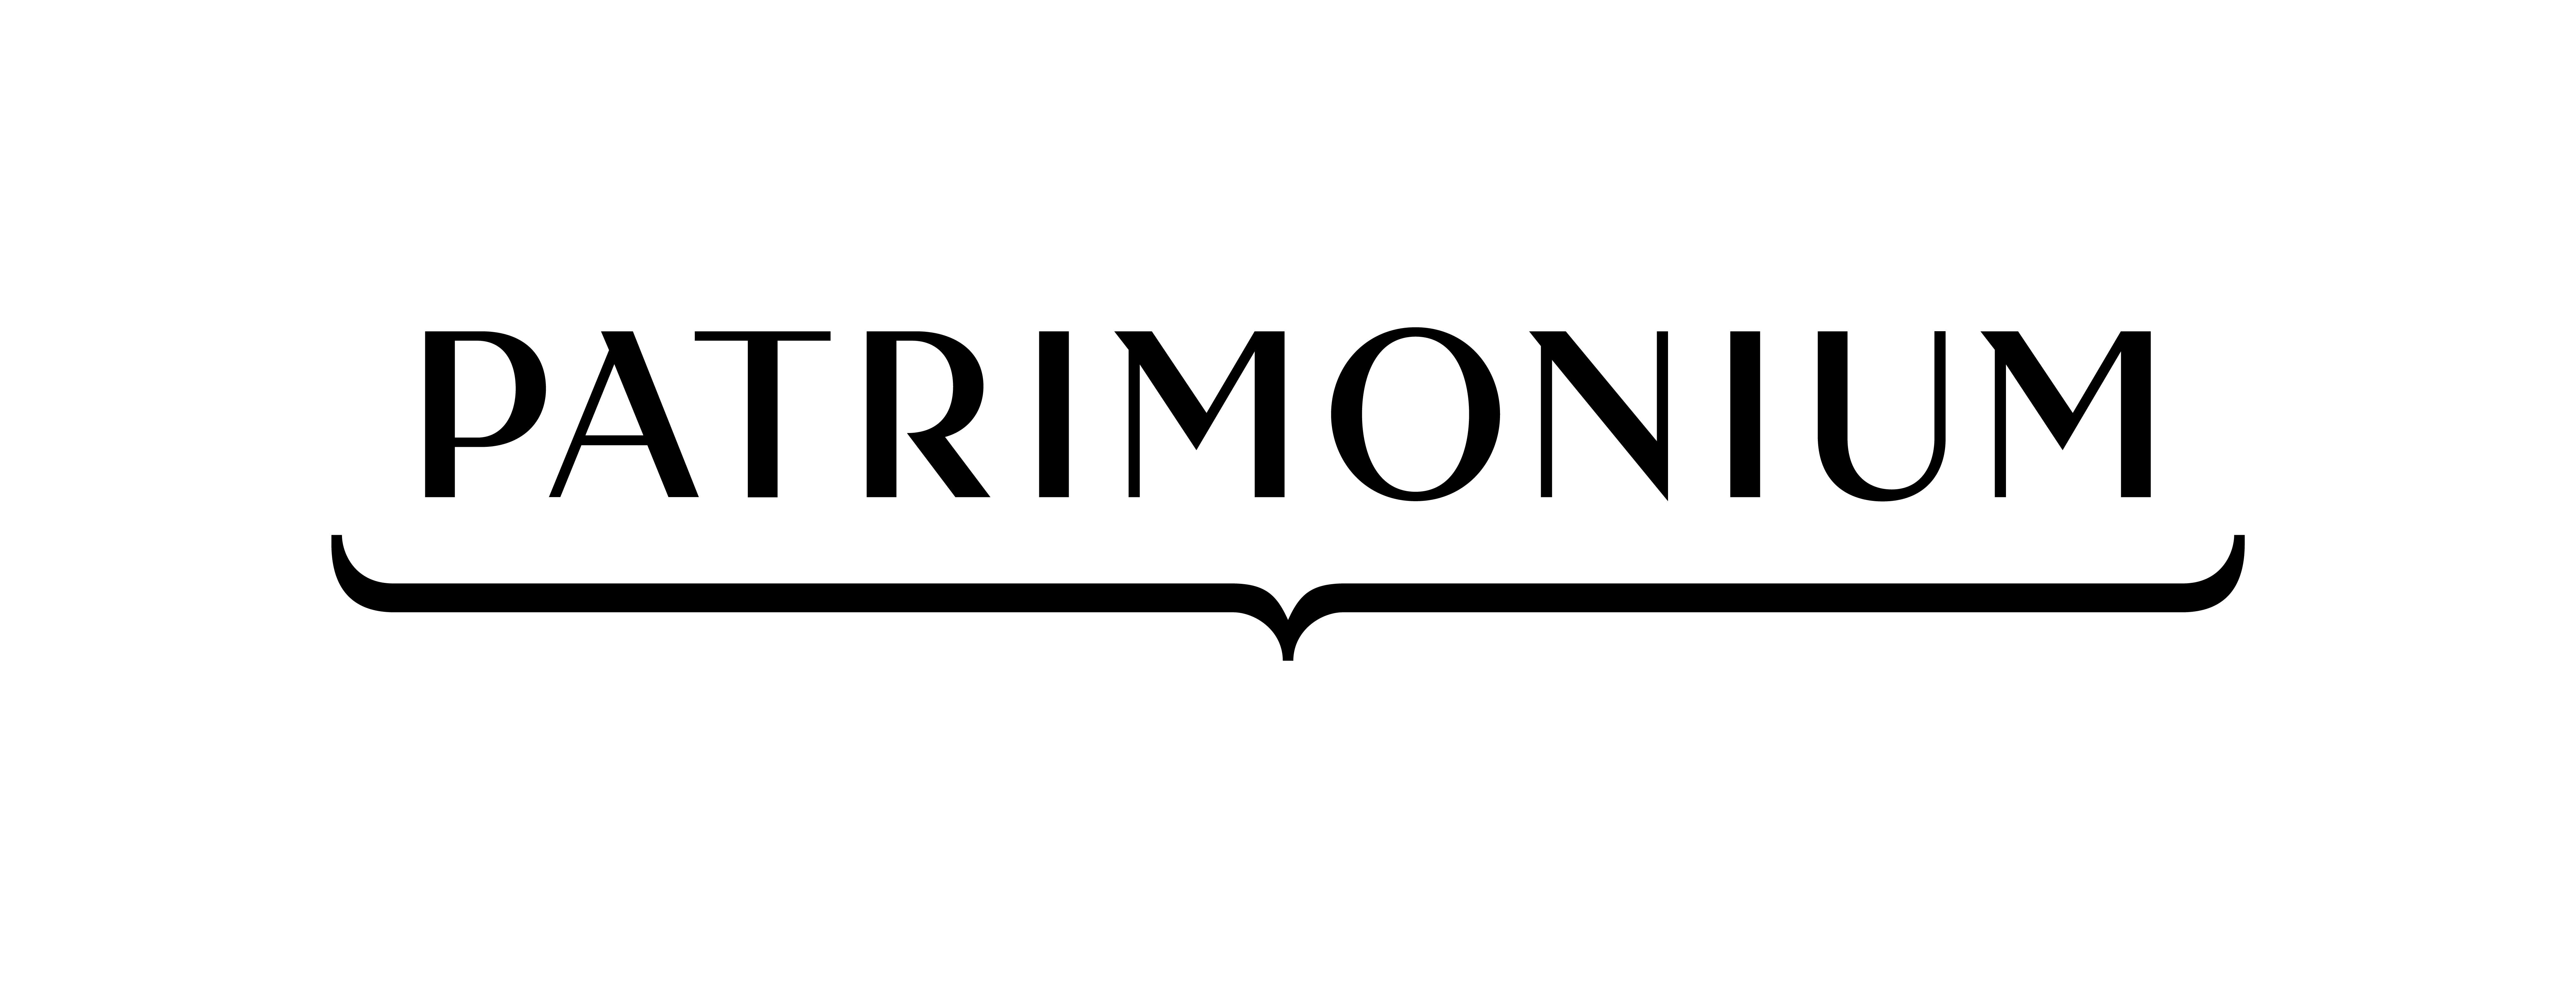 Skan logo projektu Patrimonium